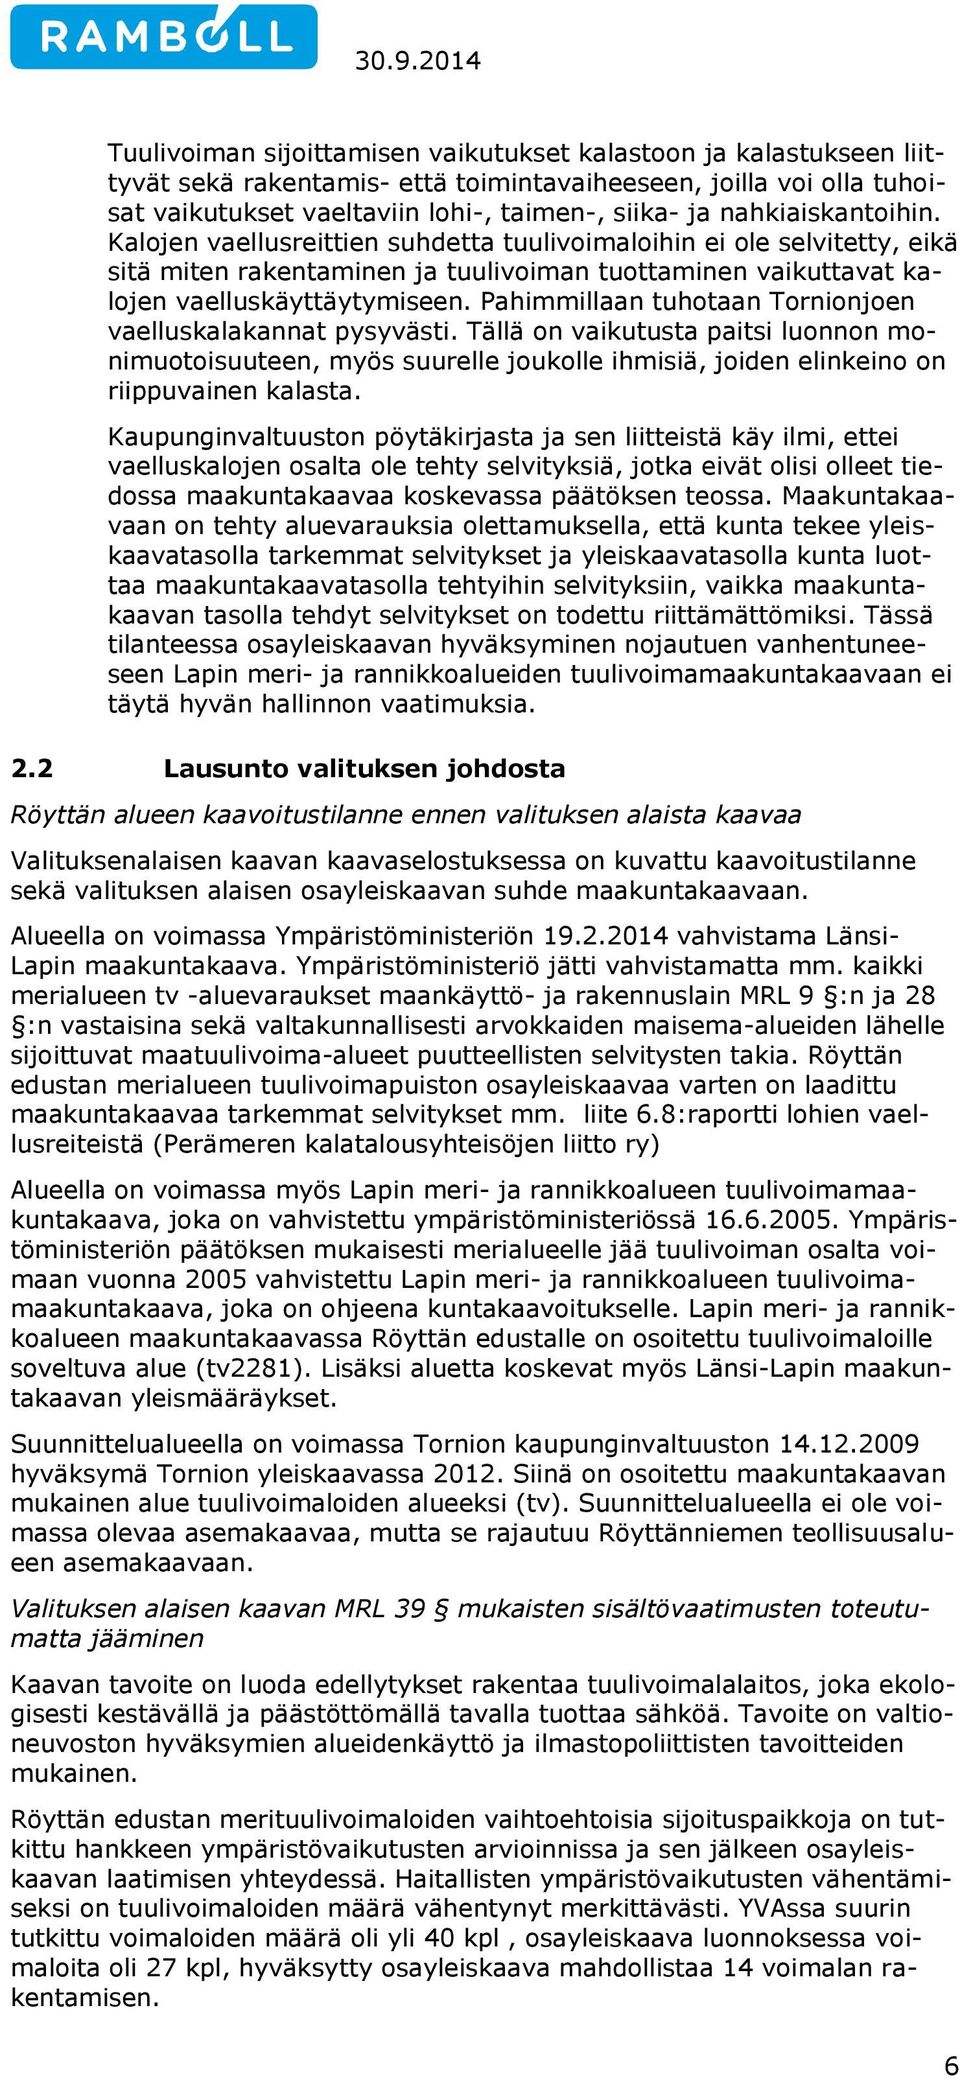 Pahimmillaan tuhotaan Tornionjoen vaelluskalakannat pysyvästi. Tällä on vaikutusta paitsi luonnon monimuotoisuuteen, myös suurelle joukolle ihmisiä, joiden elinkeino on riippuvainen kalasta.